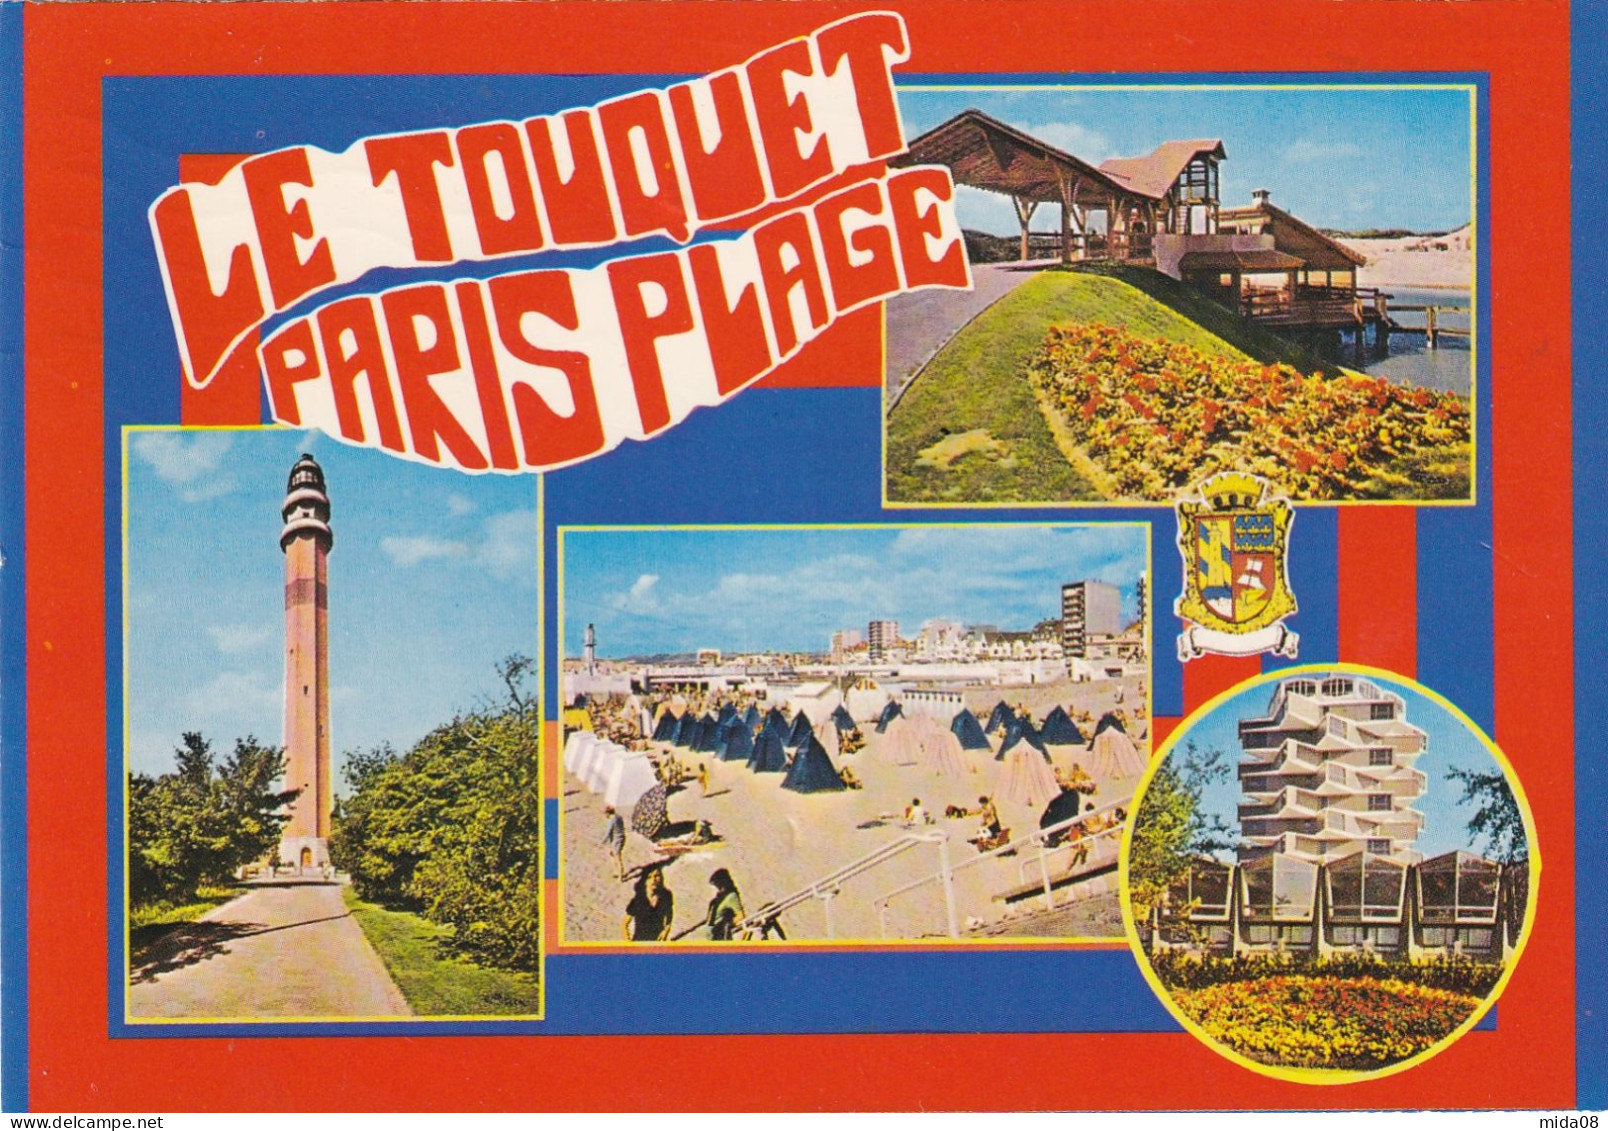 Sur Carte Postale De Le Touquet PARIS Plage .timbres Taxe à 0,30 Et O,10 . Taxée à RAUCOURT ET FLABA En 1981 - 1960-.... Gebraucht